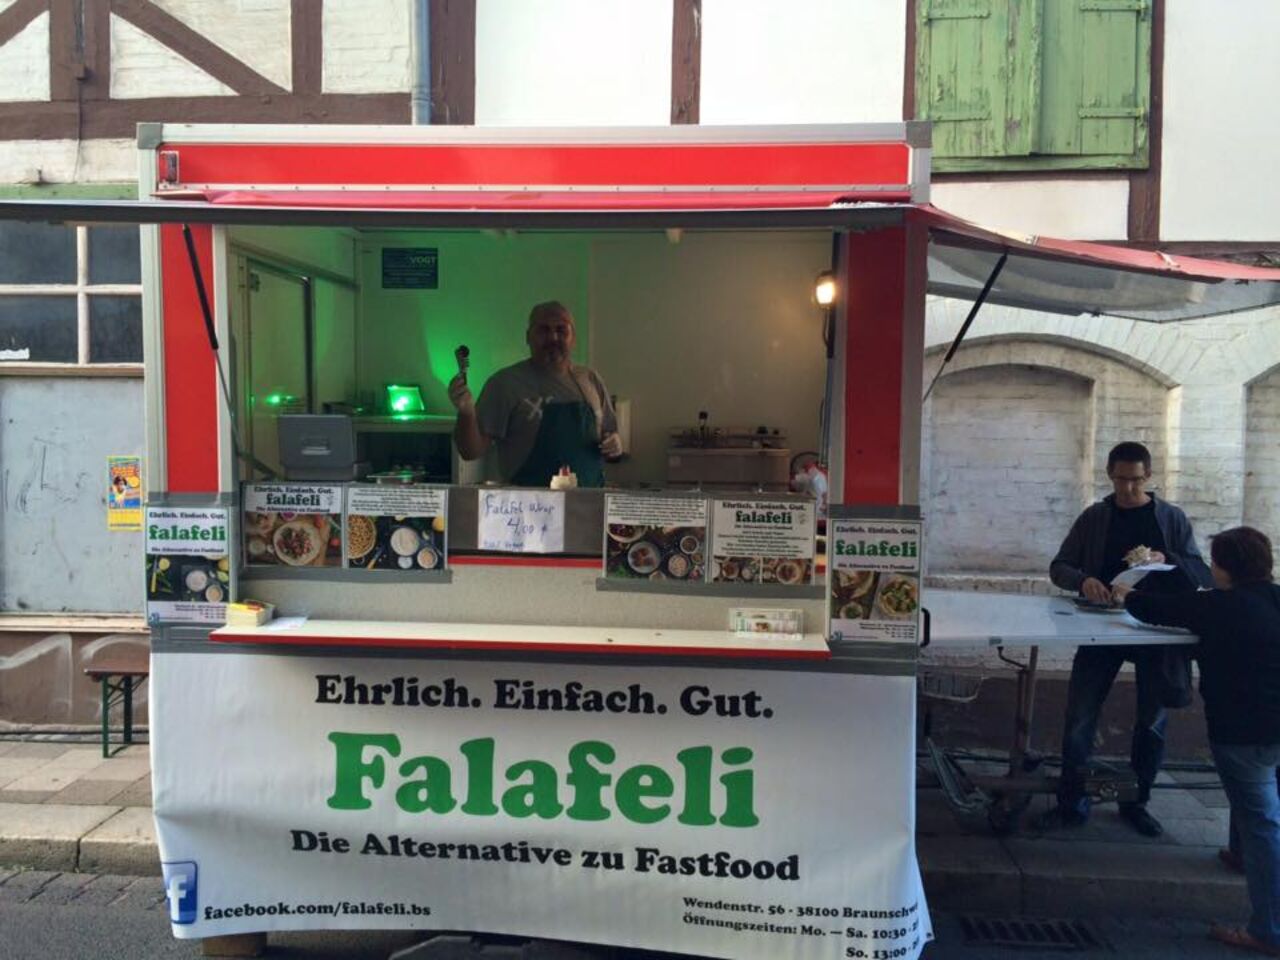 A photo of Falafeli